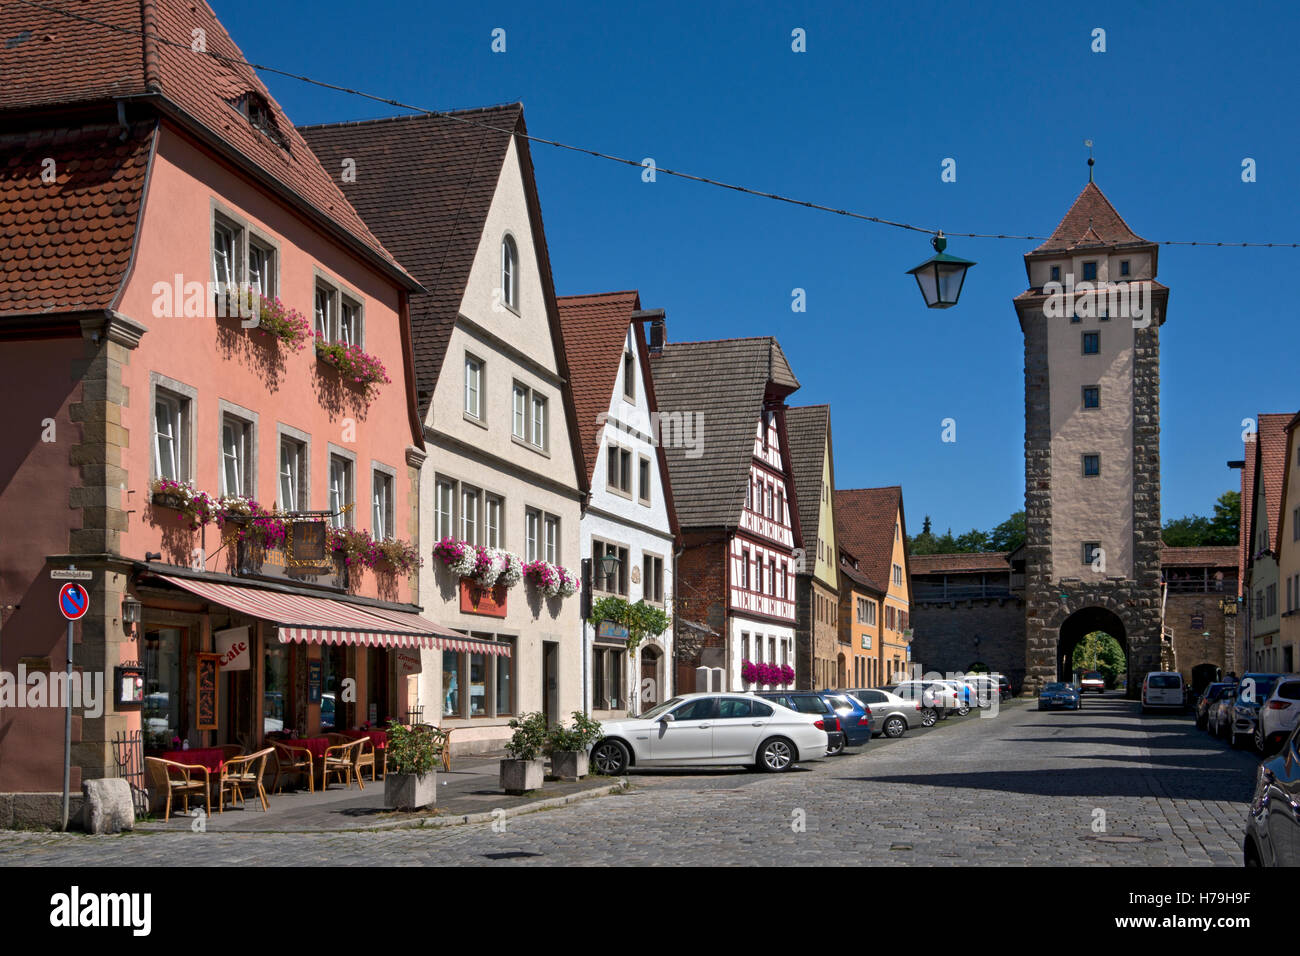 Escena callejera, paredes y gatehouse a Rothenburg ob der Tauber, ciudad medieval, Baviera, Alemania Foto de stock